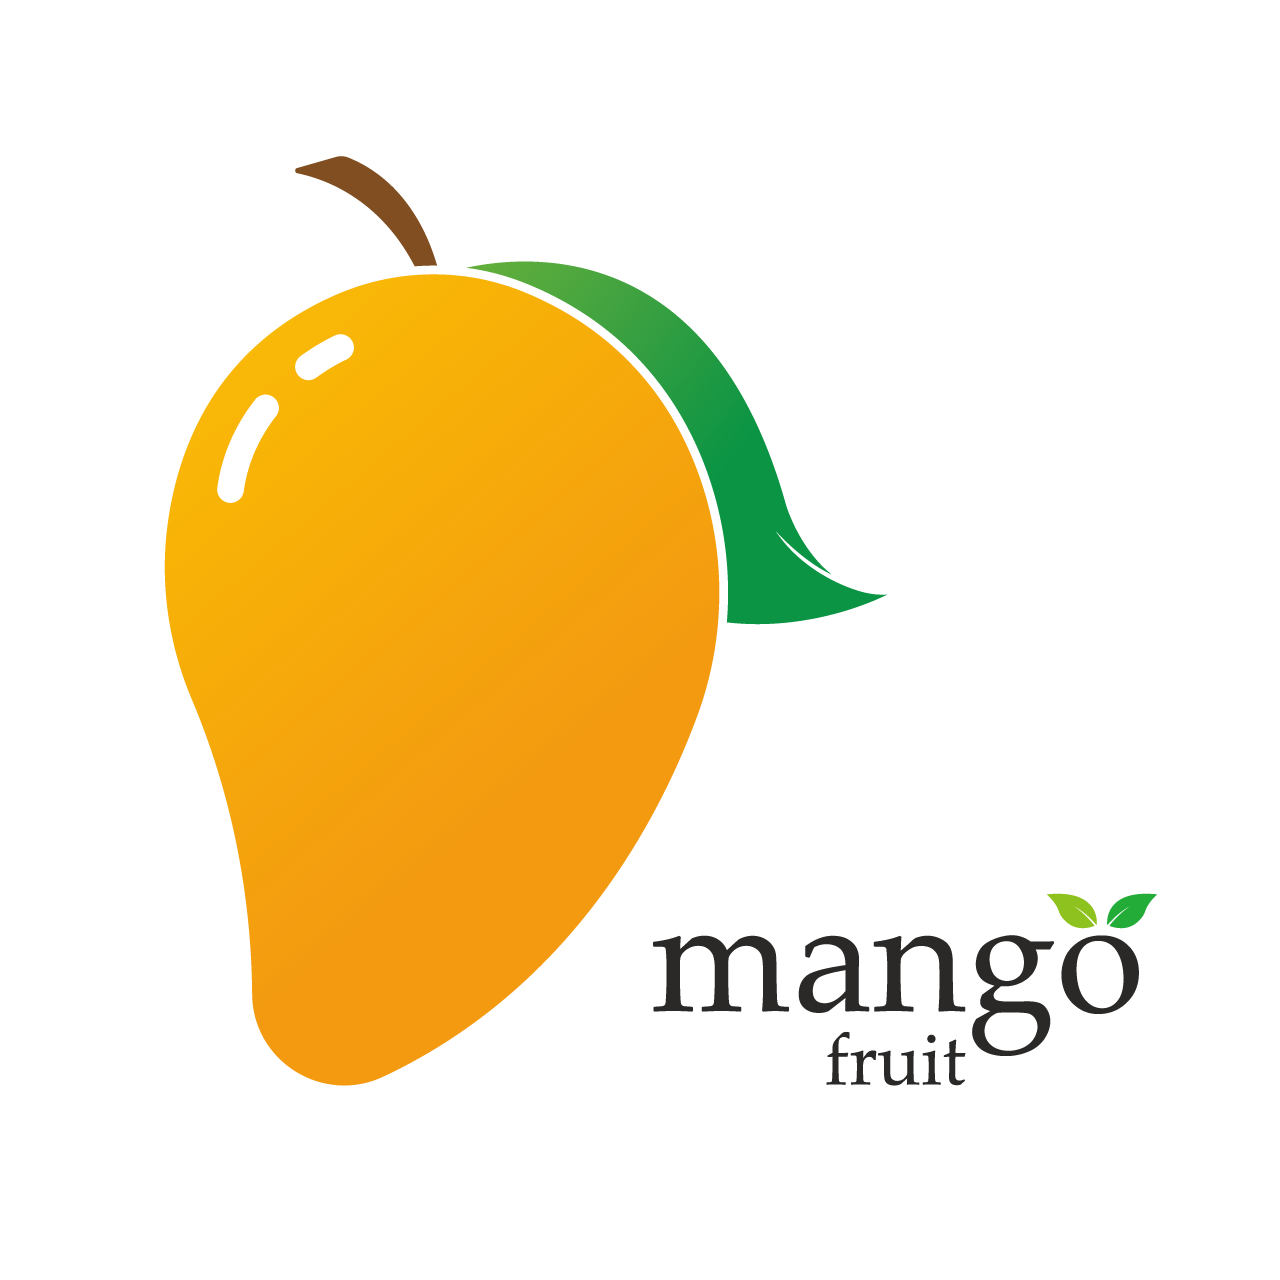 Mango flat style icon transparent background